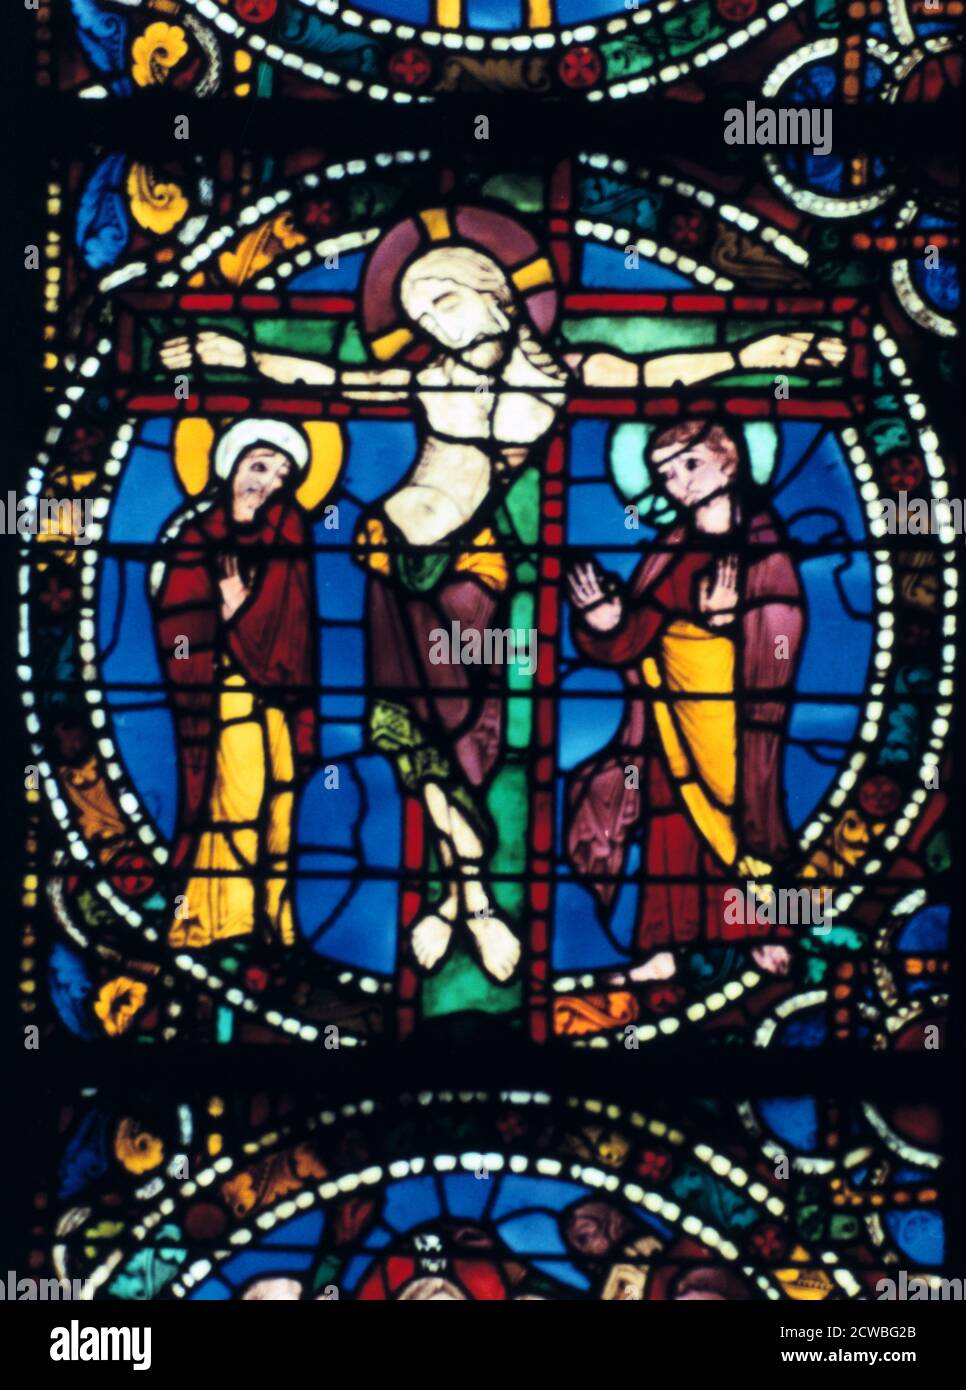 Le Christ sur la croix, vitrail, Cathédrale de Chartres, France, 1194-1260. Banque D'Images